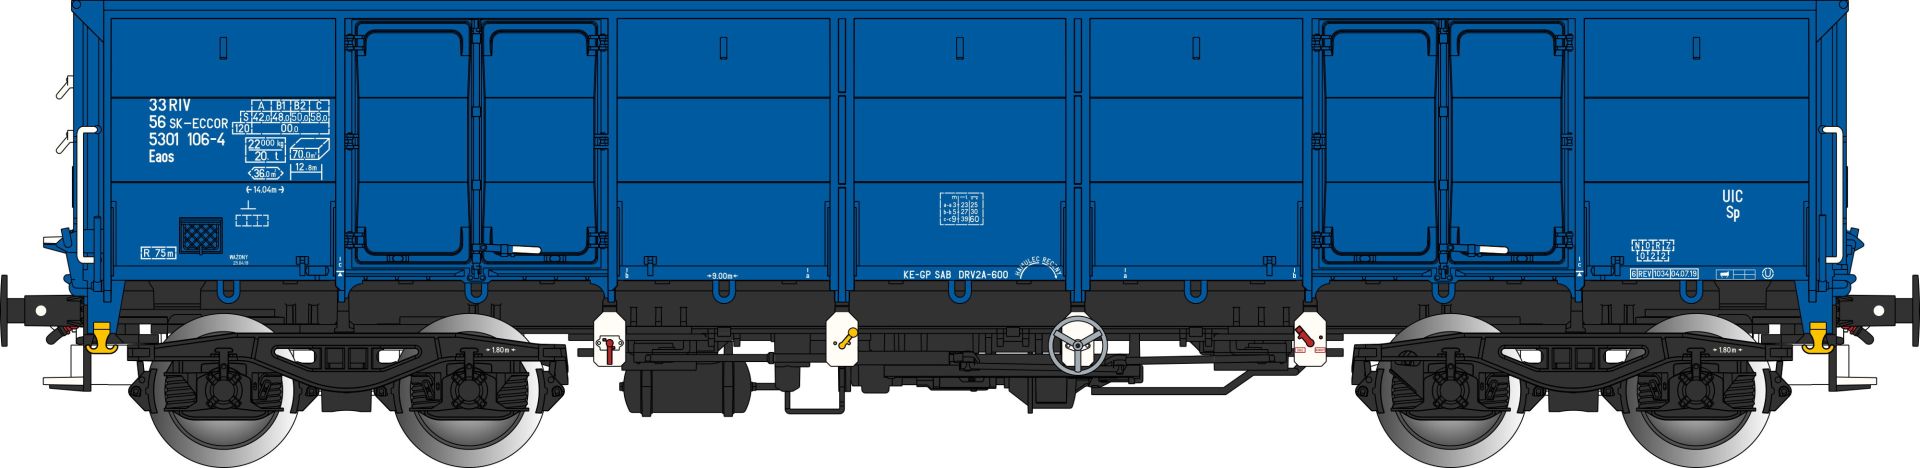 Albert Modell 530001 - Offener Güterwagen Eaos, SK-ECCOR, Ep.VI